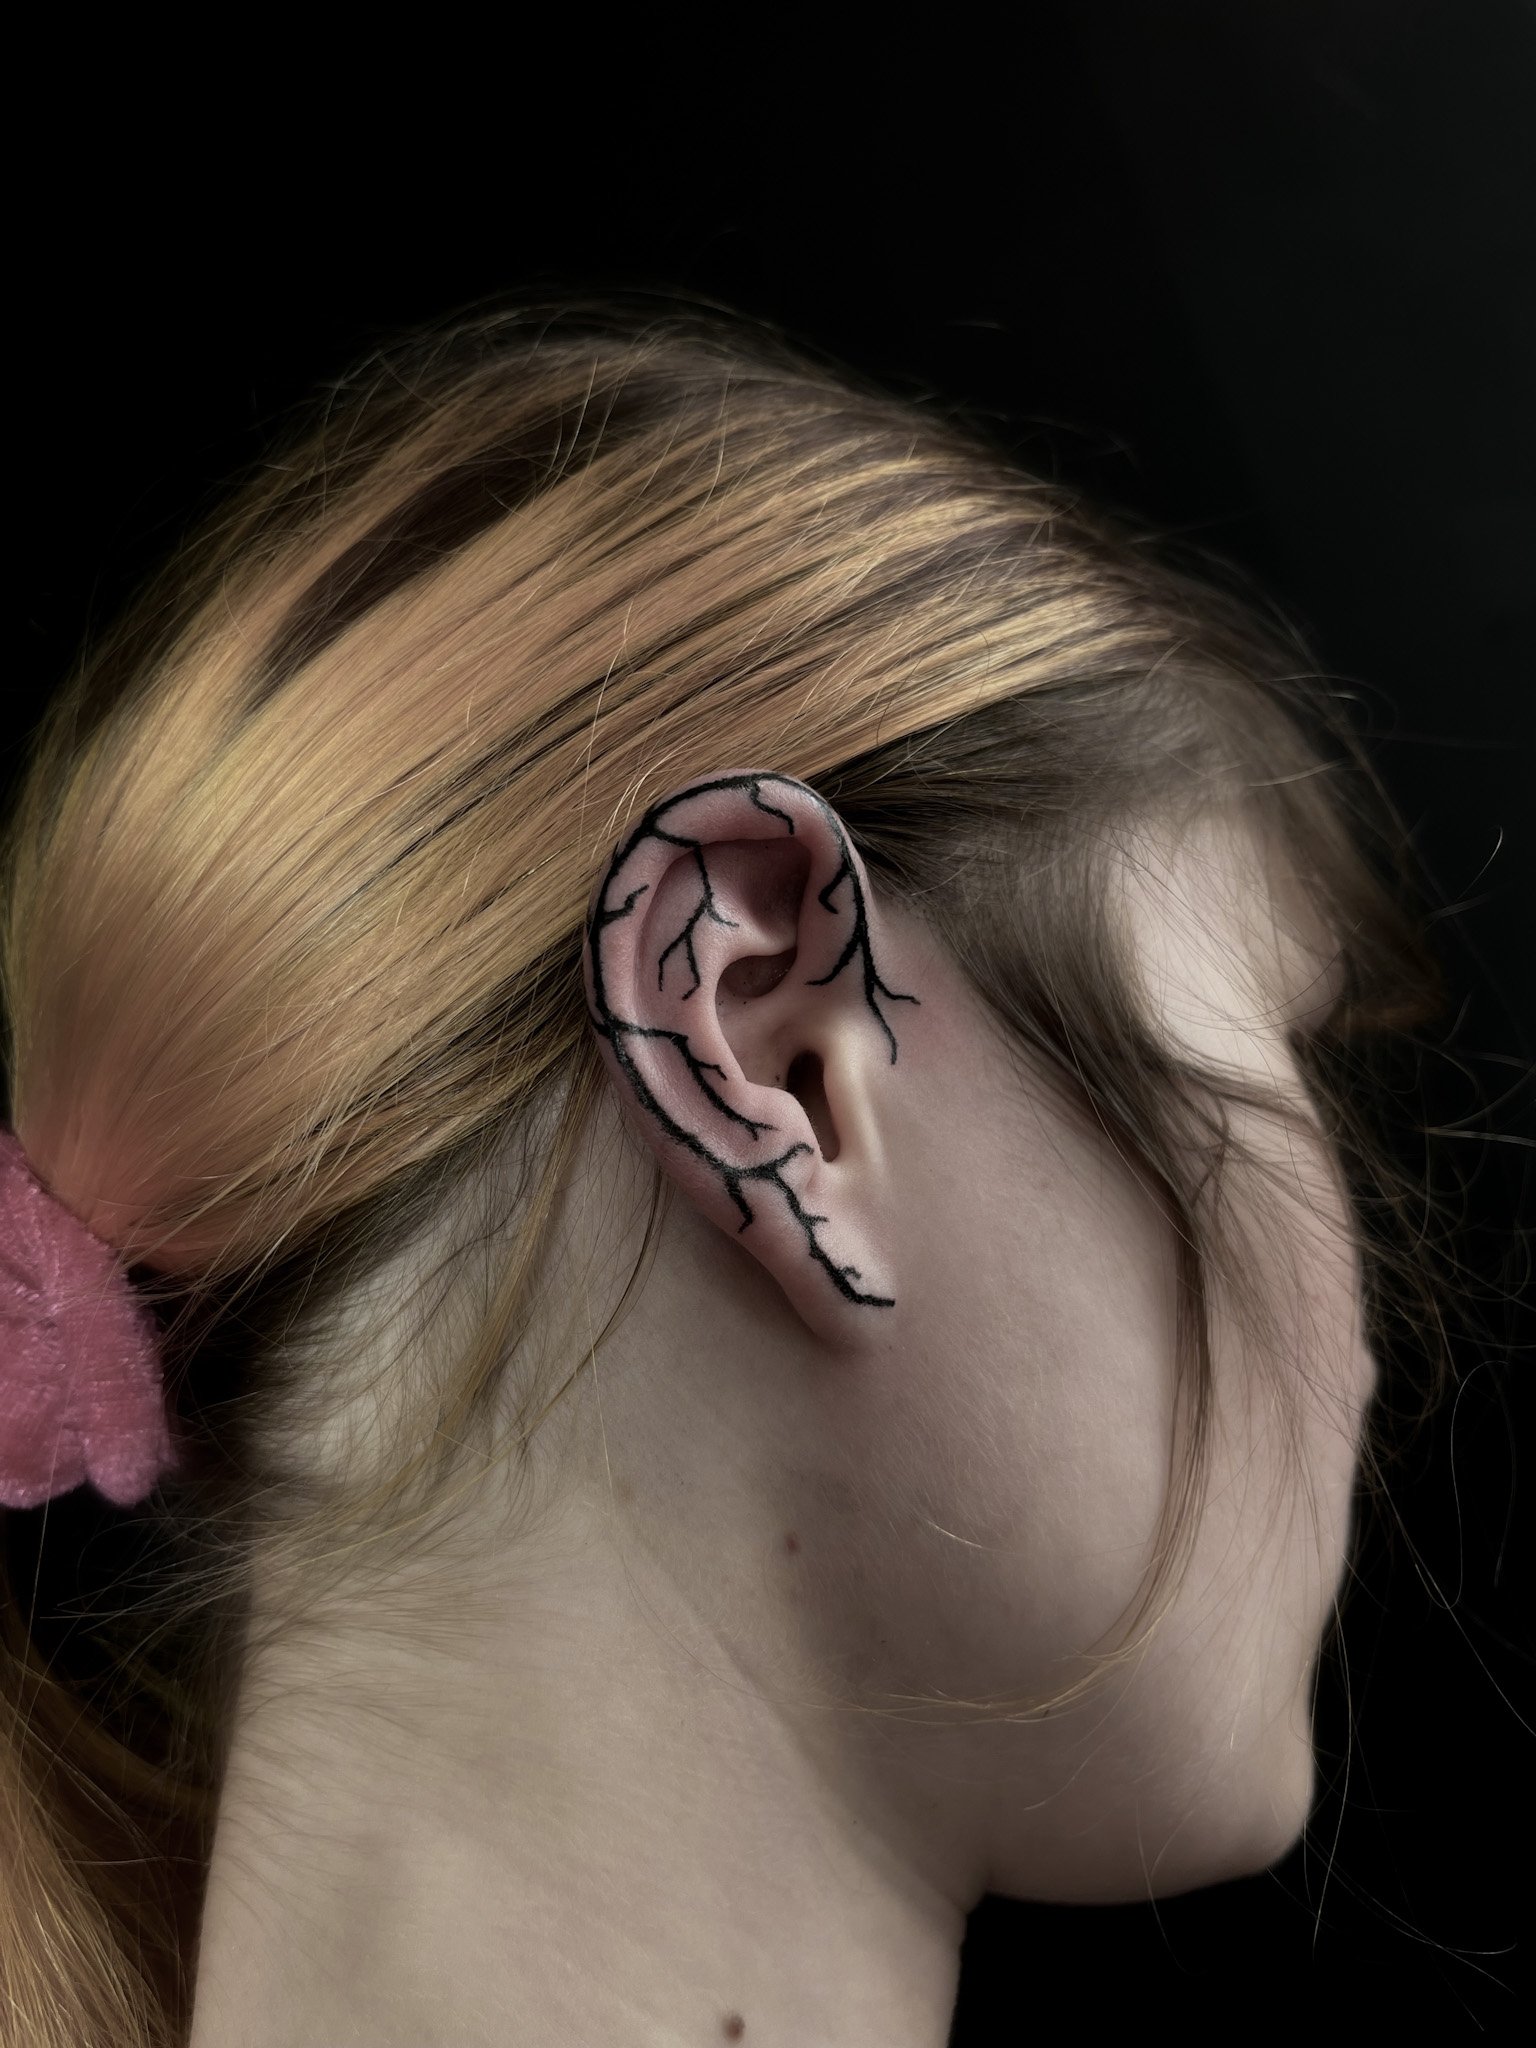 Small Ear Tattoo Ideas: Helix Tattoos